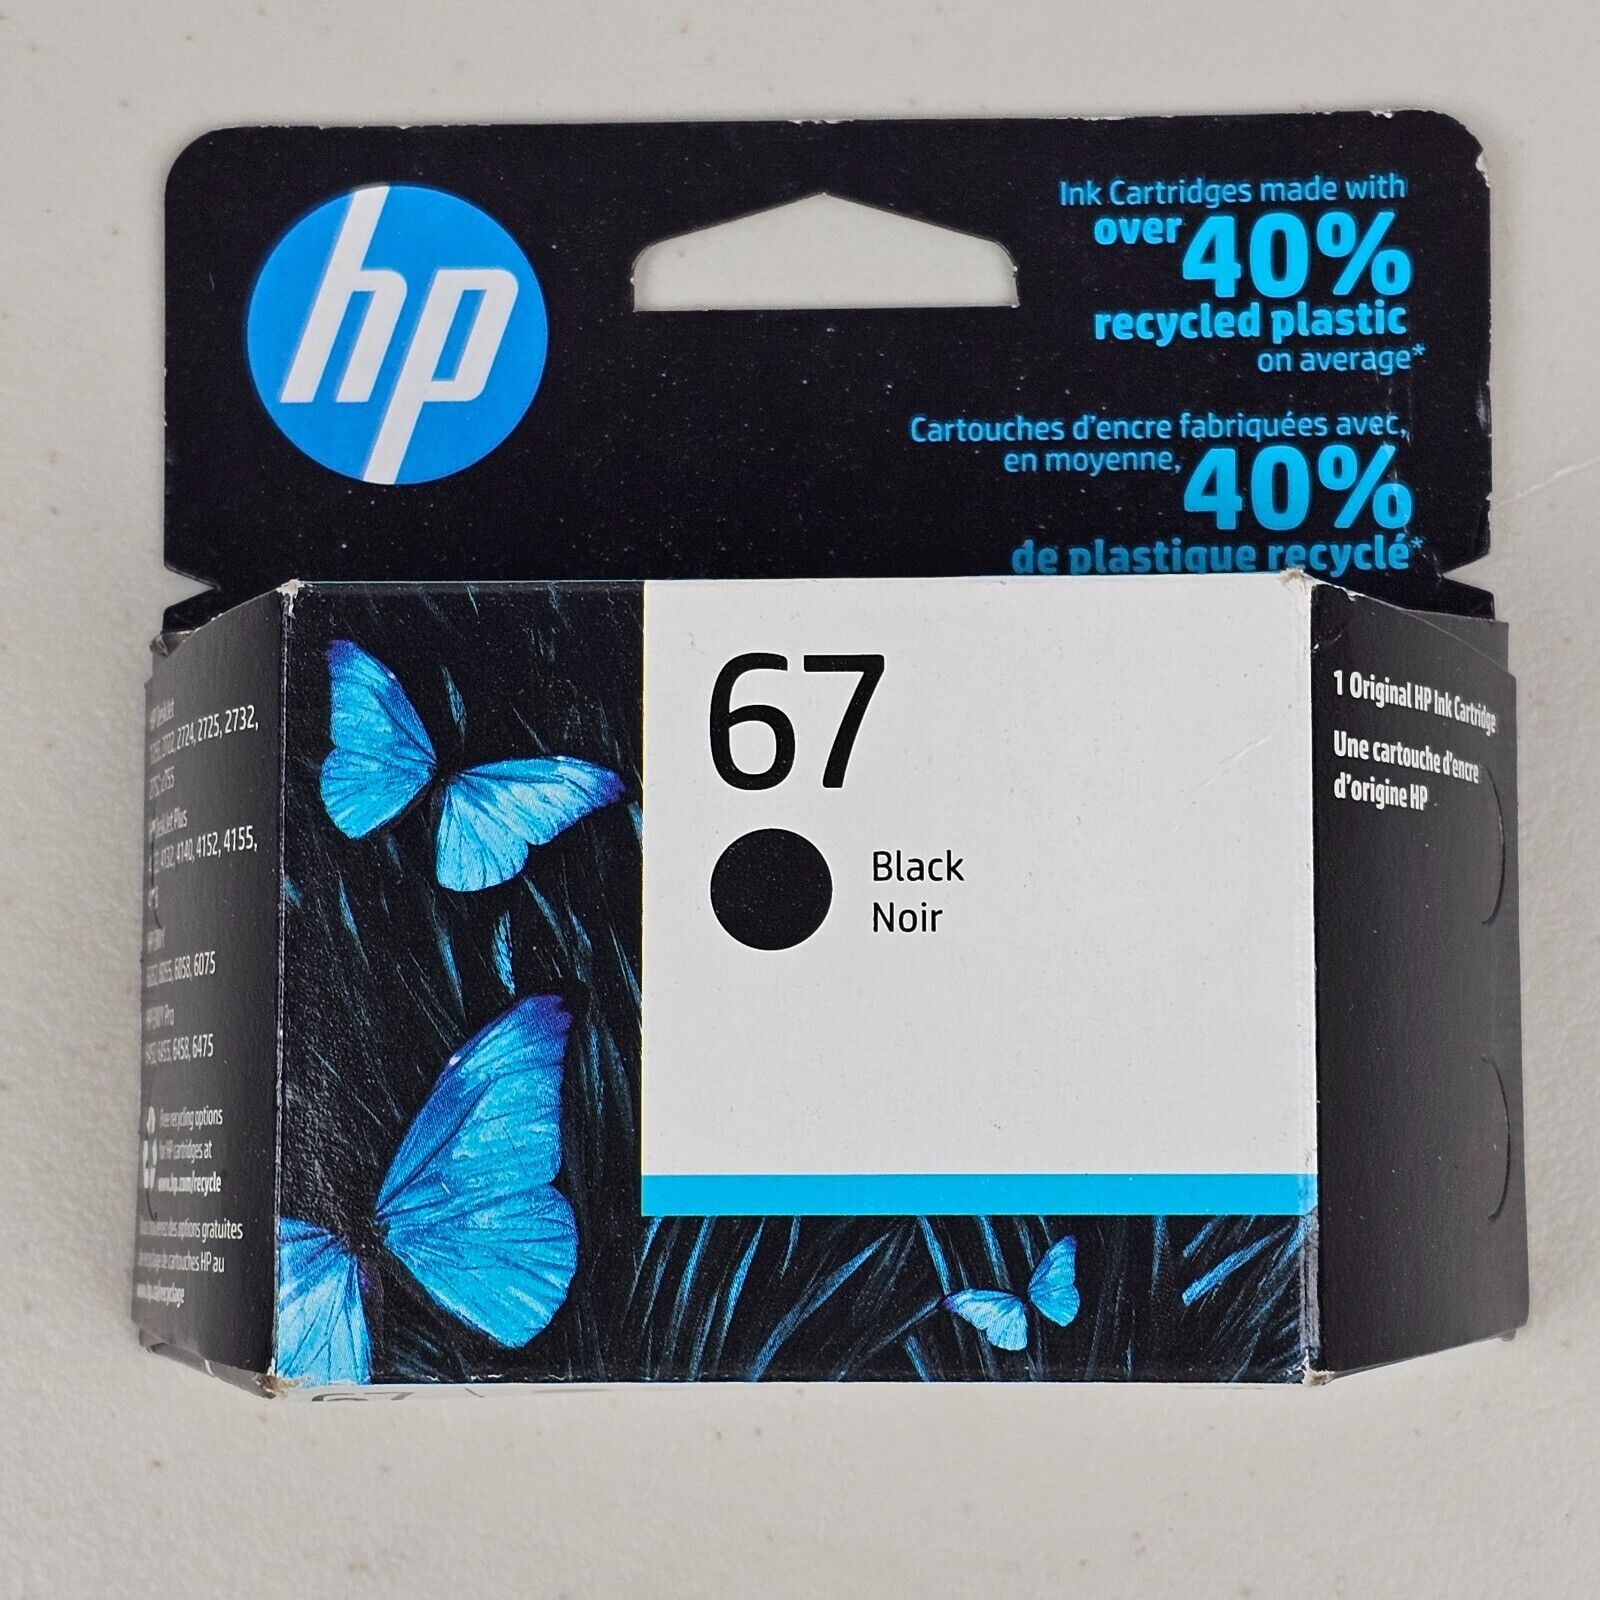 New Genuine HP 67 Black Ink Cartridge in Retail Box EXP 03/2023 